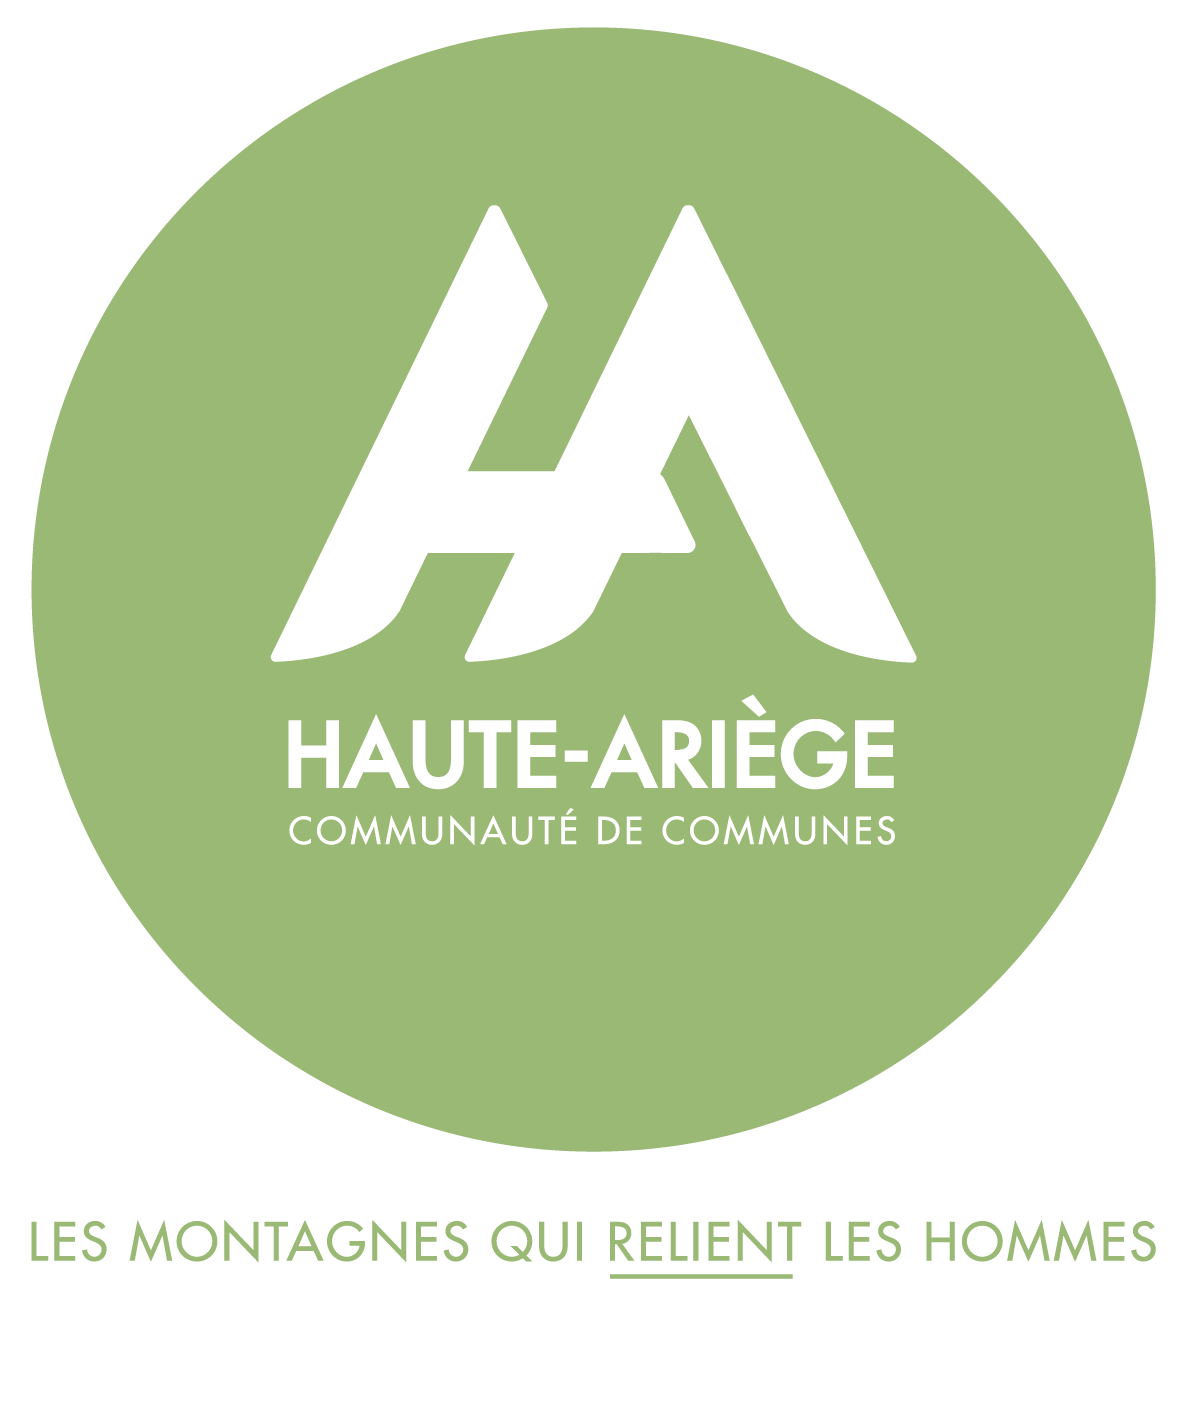 rond vert avec à l'intérieur, l'inscription en blanche HA pour Haute Ariège et Communauté de communes